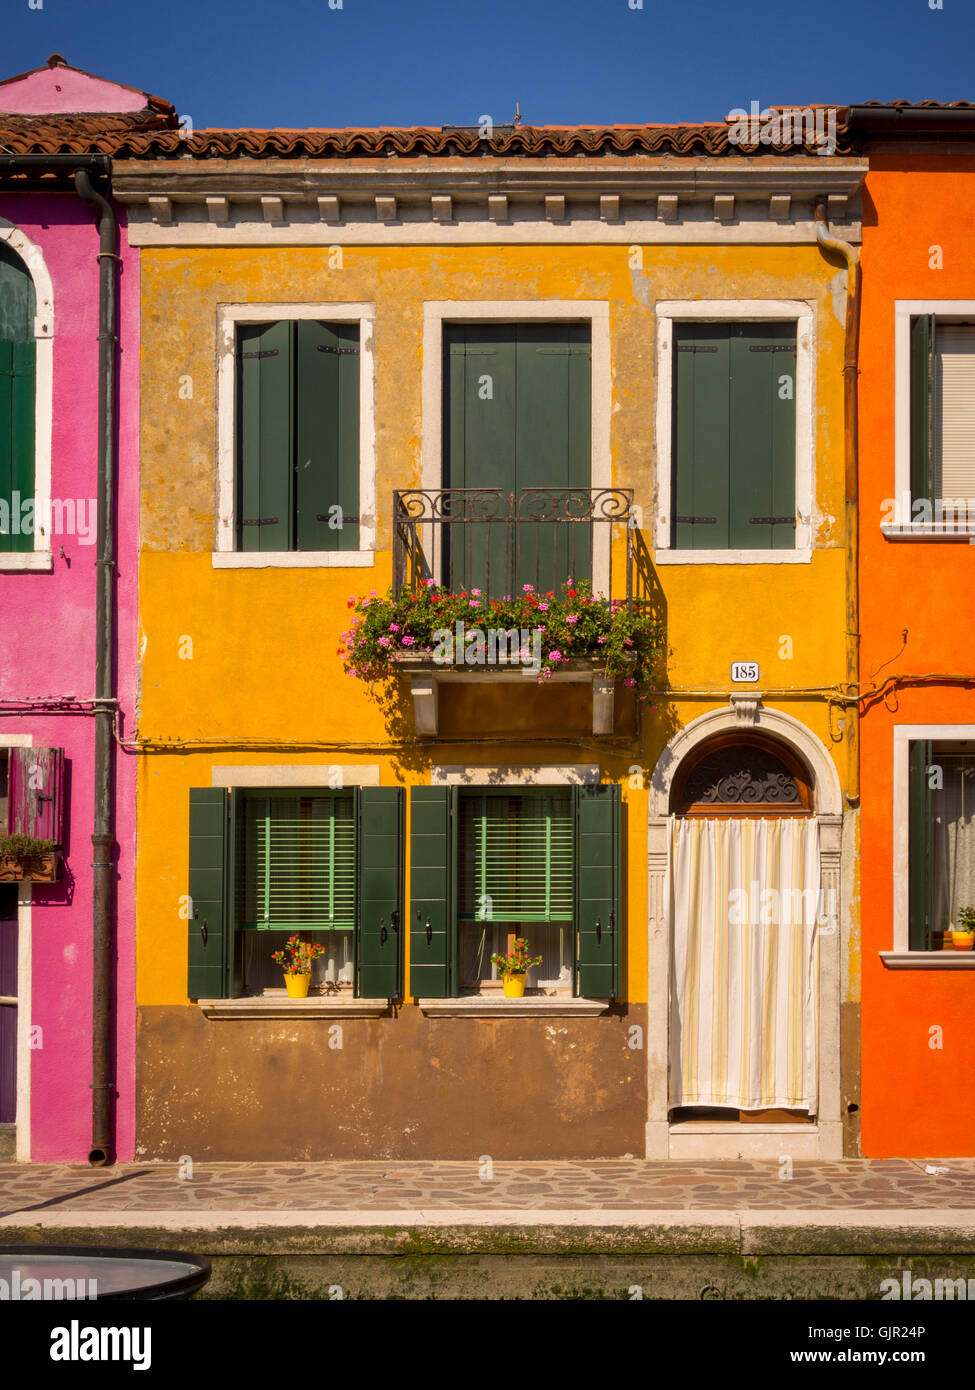 La maison traditionnelle colorée, en bord de canal sur l'île de Burano. Venise, Italie. Banque D'Images